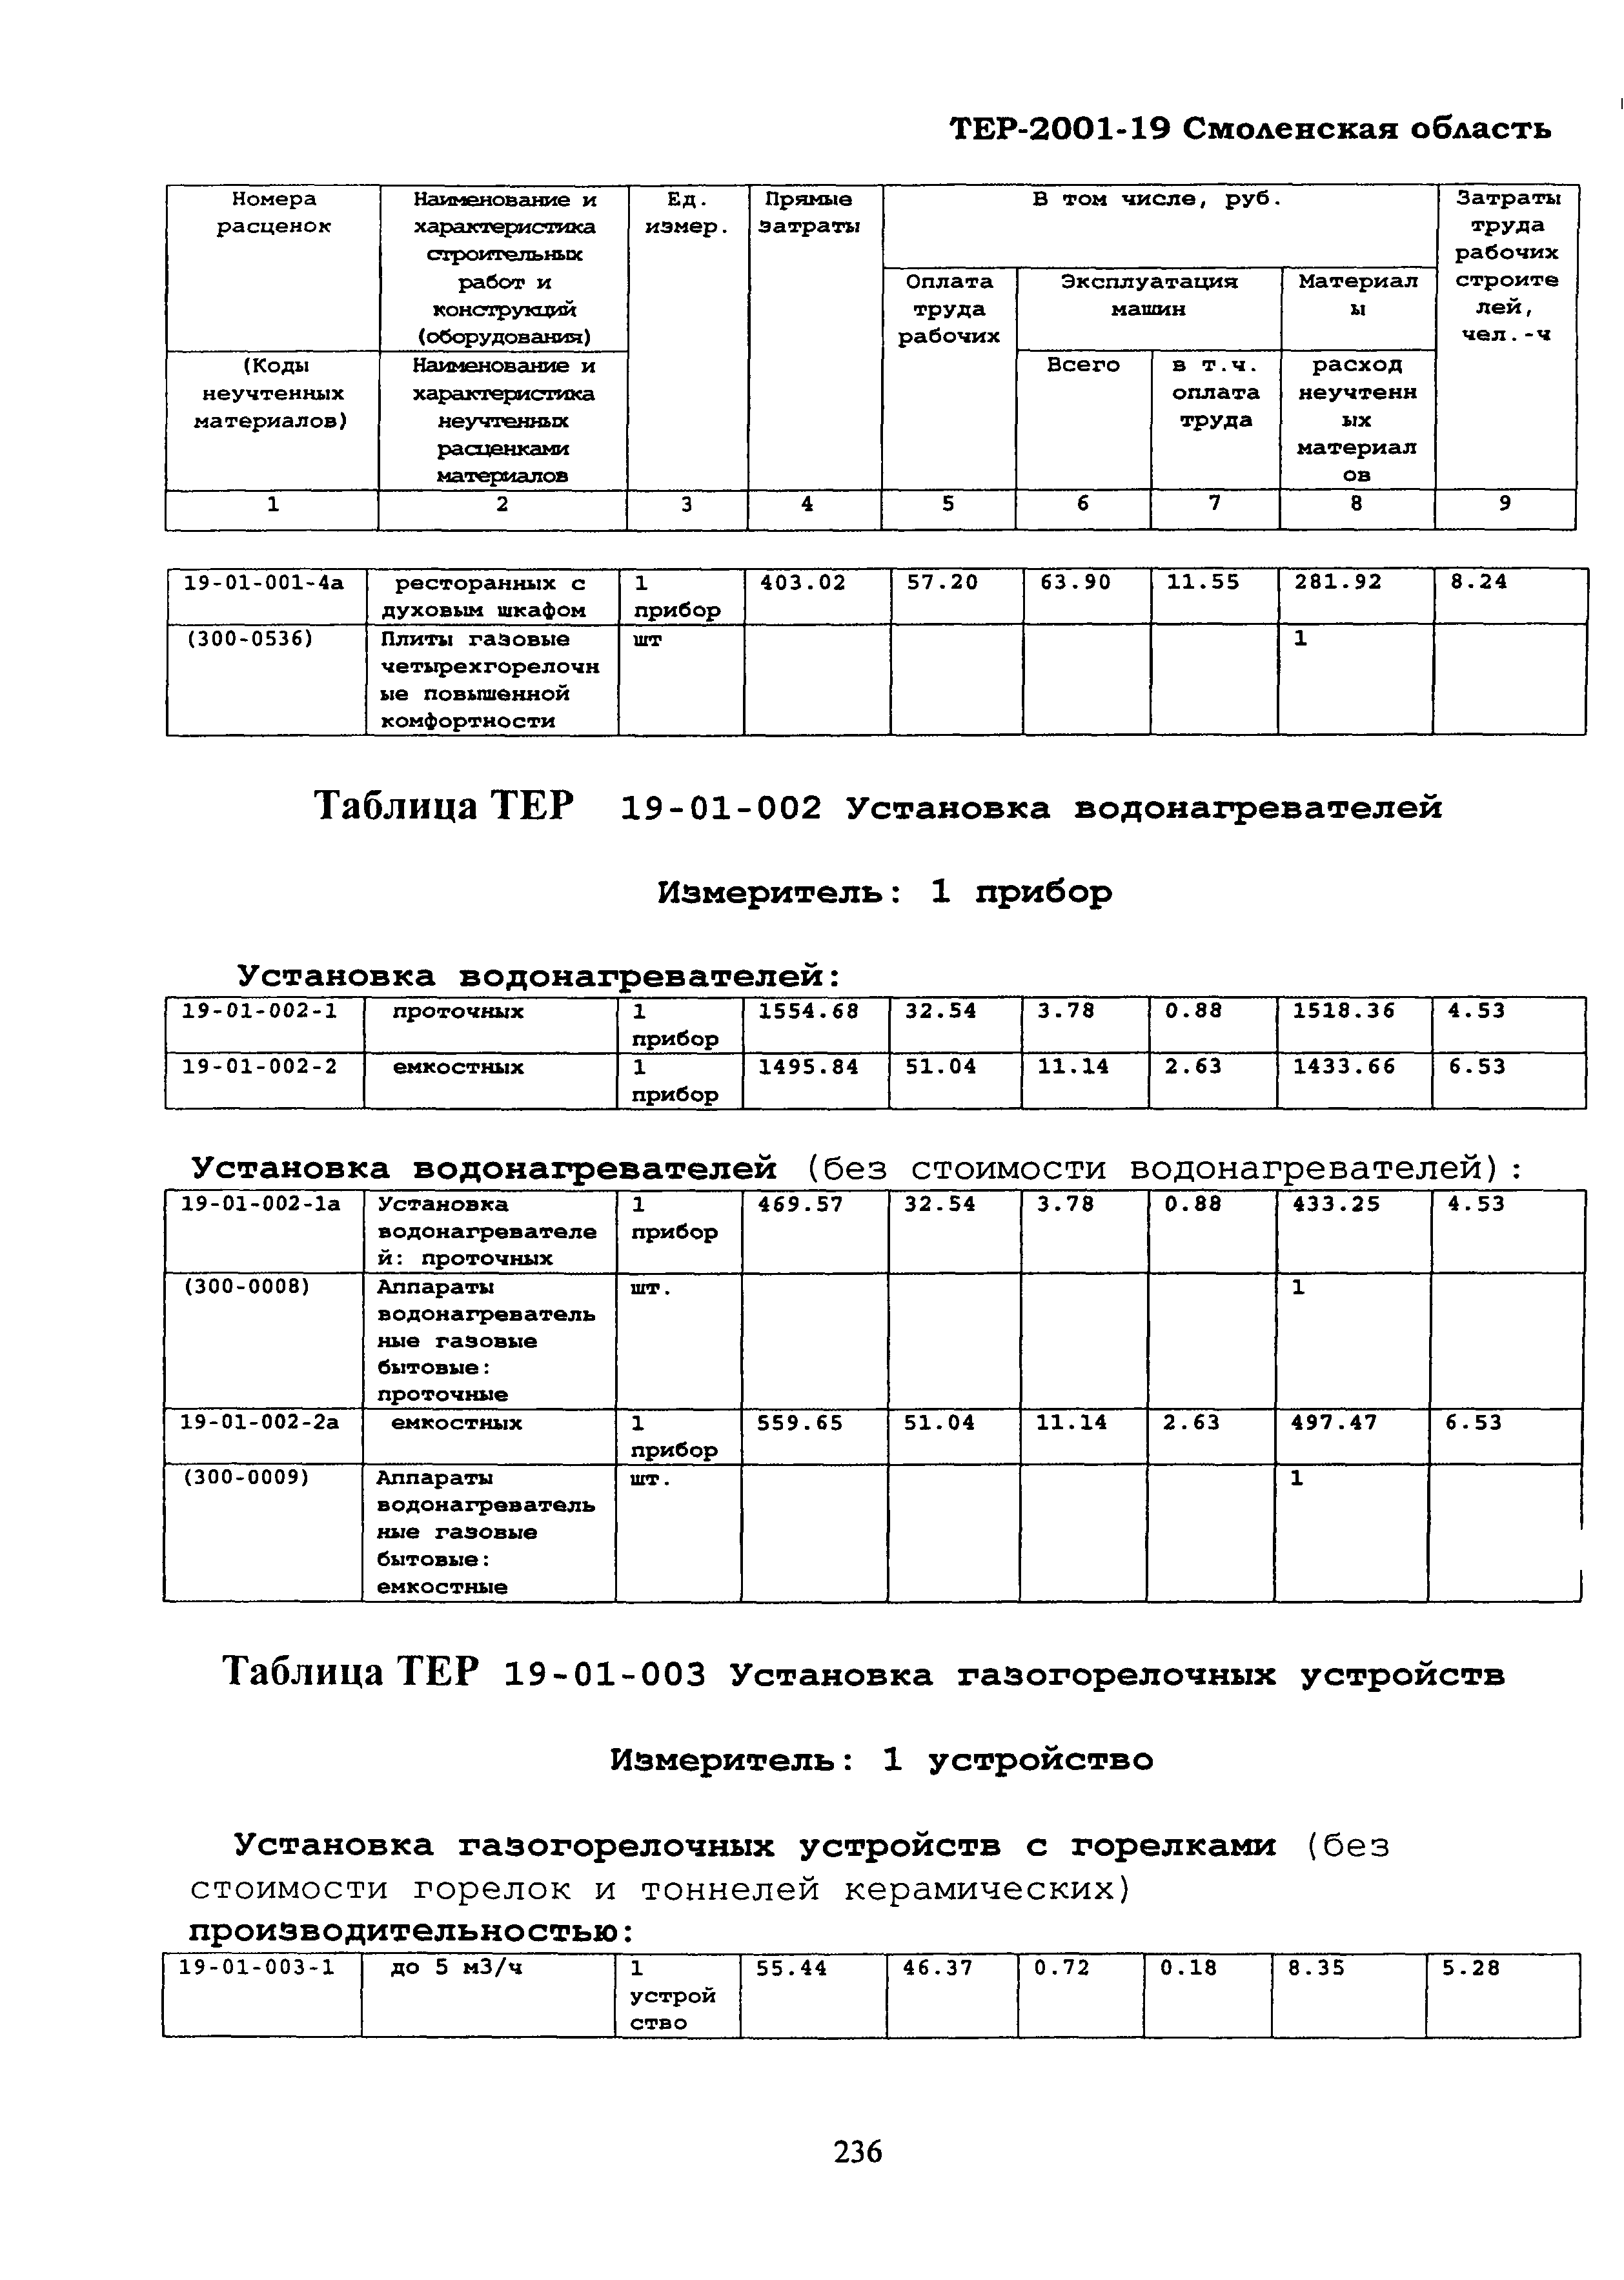 ТЕР Смоленской обл. 2001-19